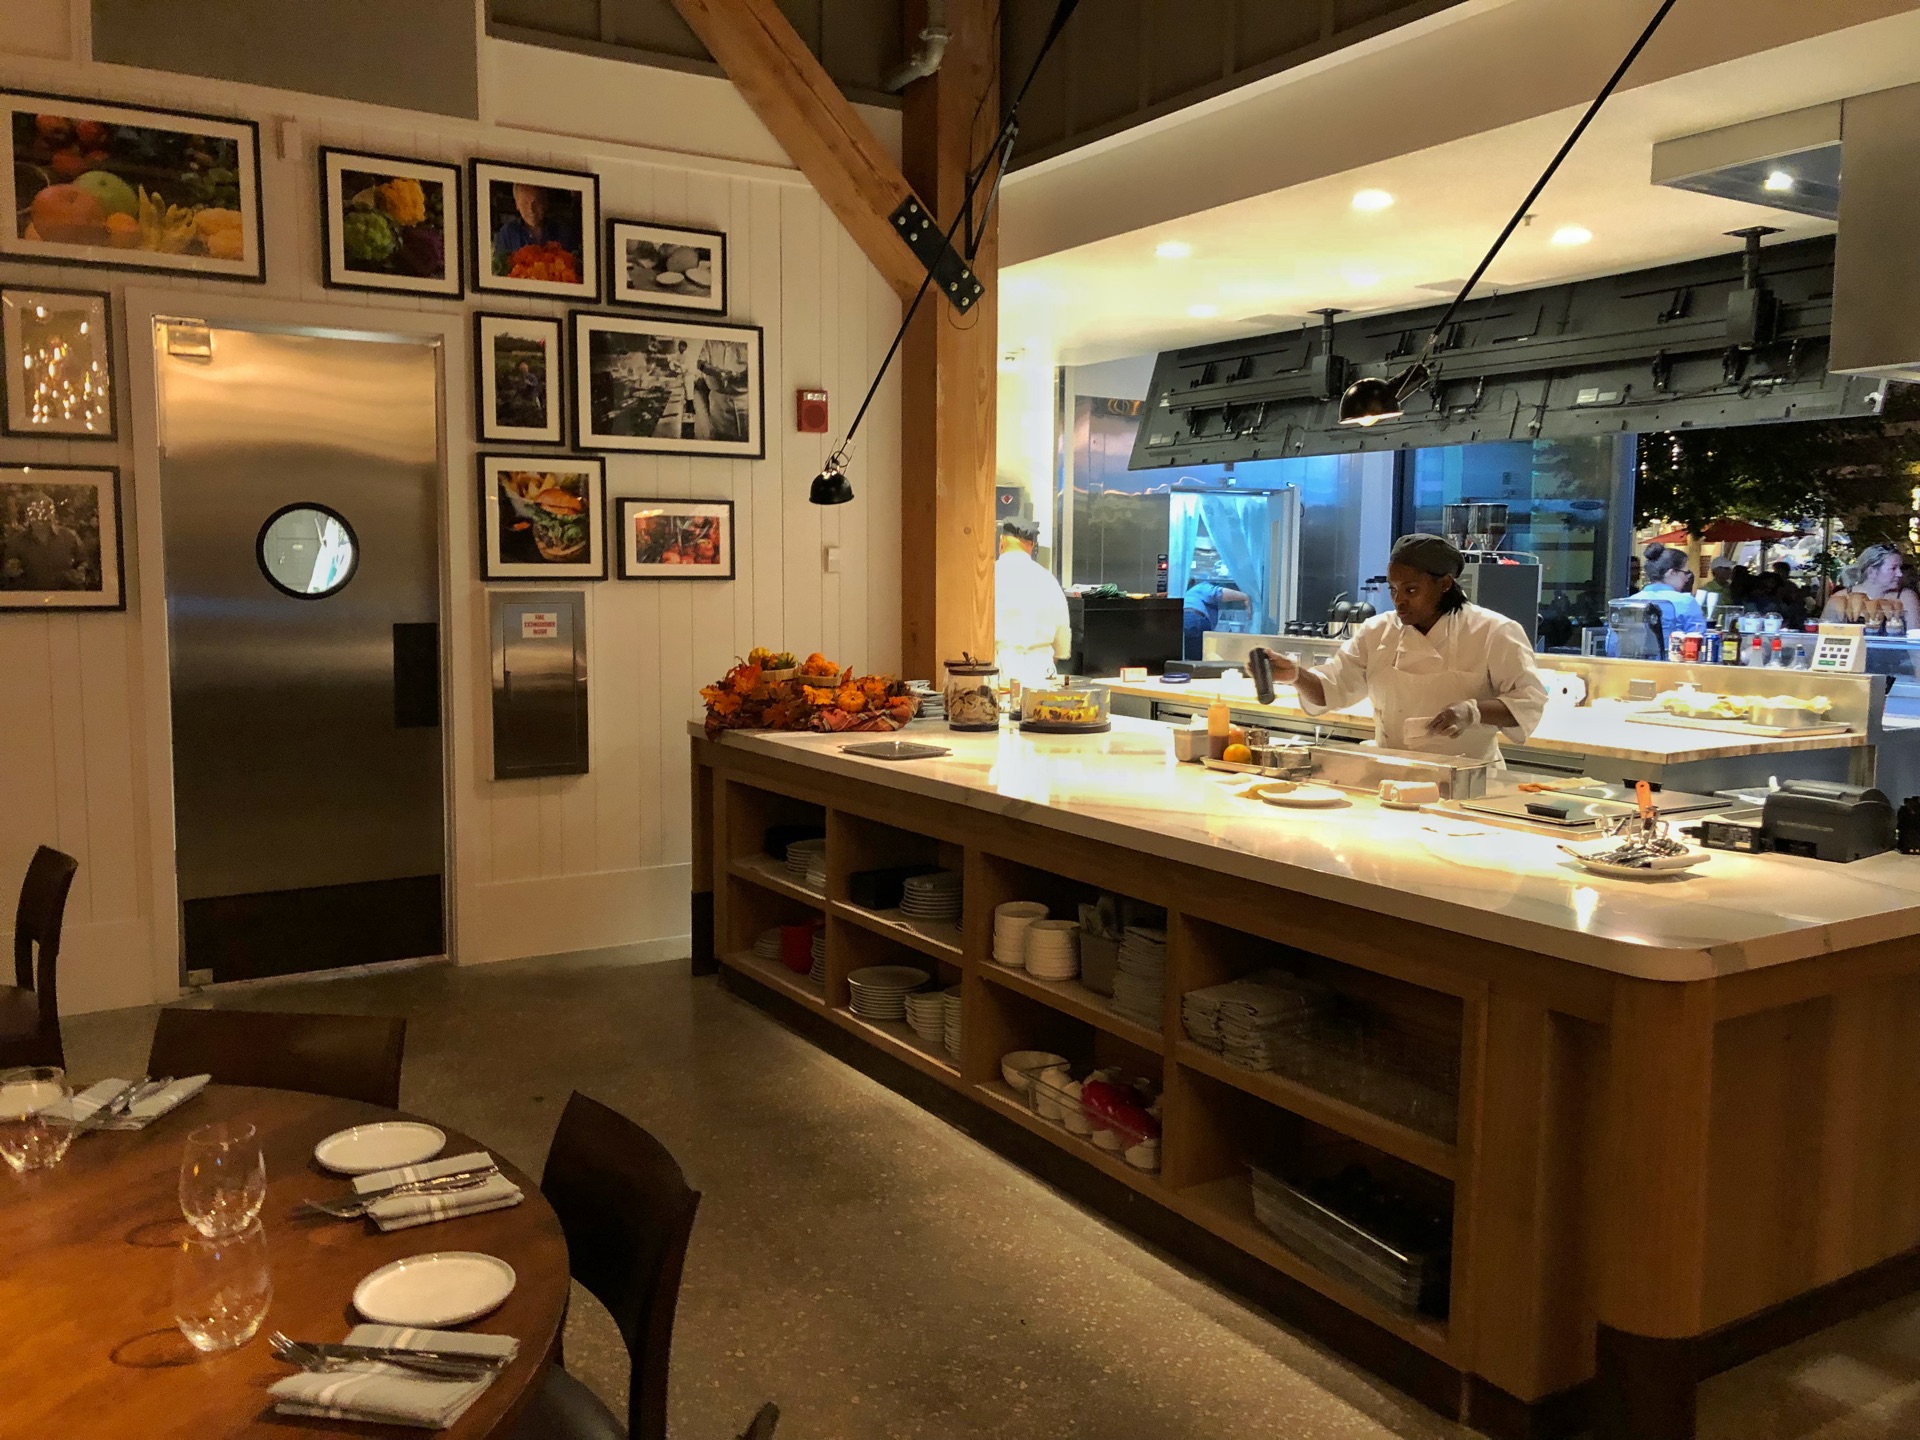 wolfgang puck kitchen and bar photos